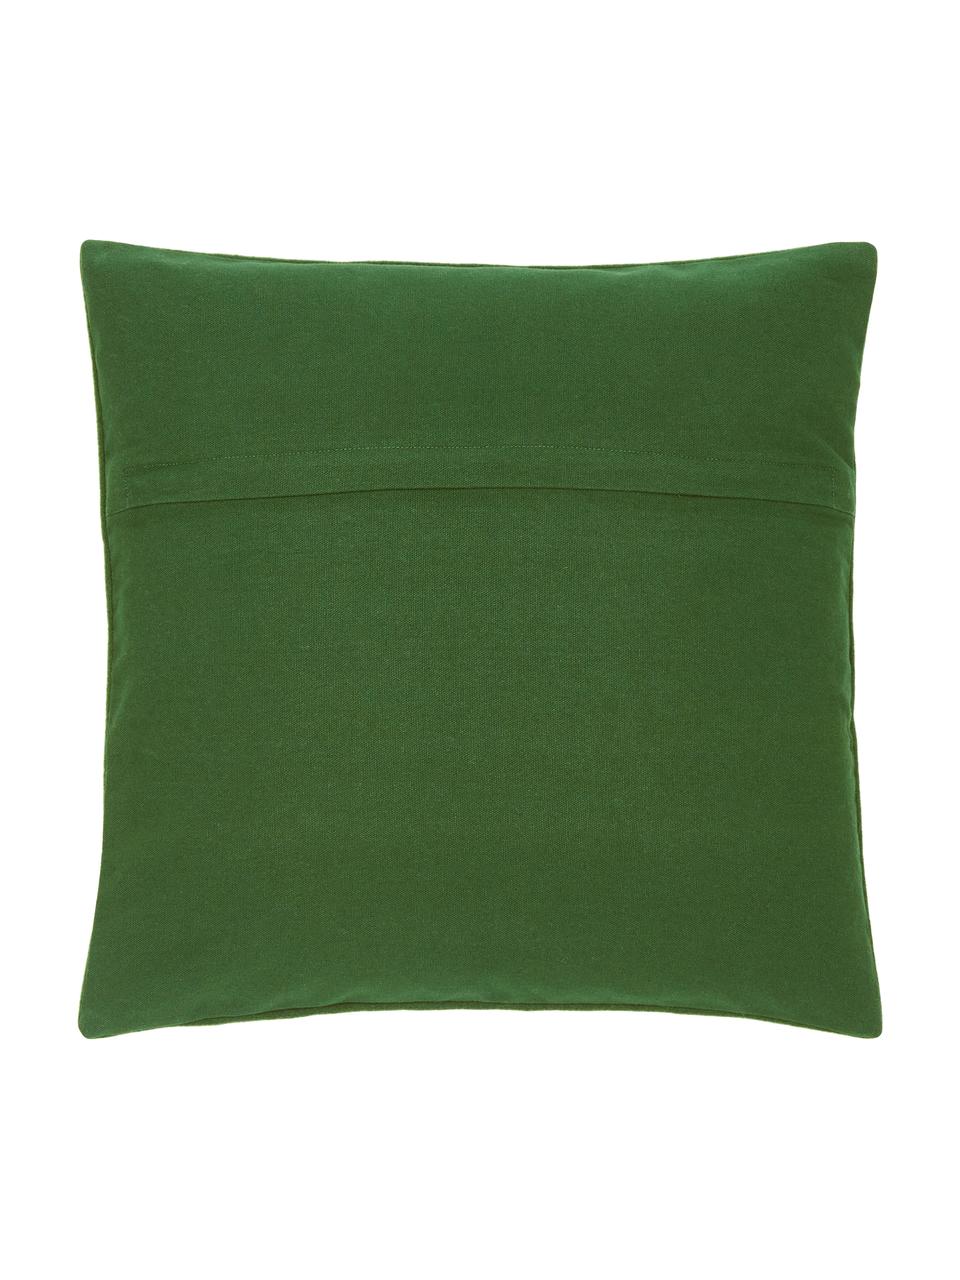 Poszewka na poduszkę z haftem Joy, Zielony, S 45 x D 45 cm